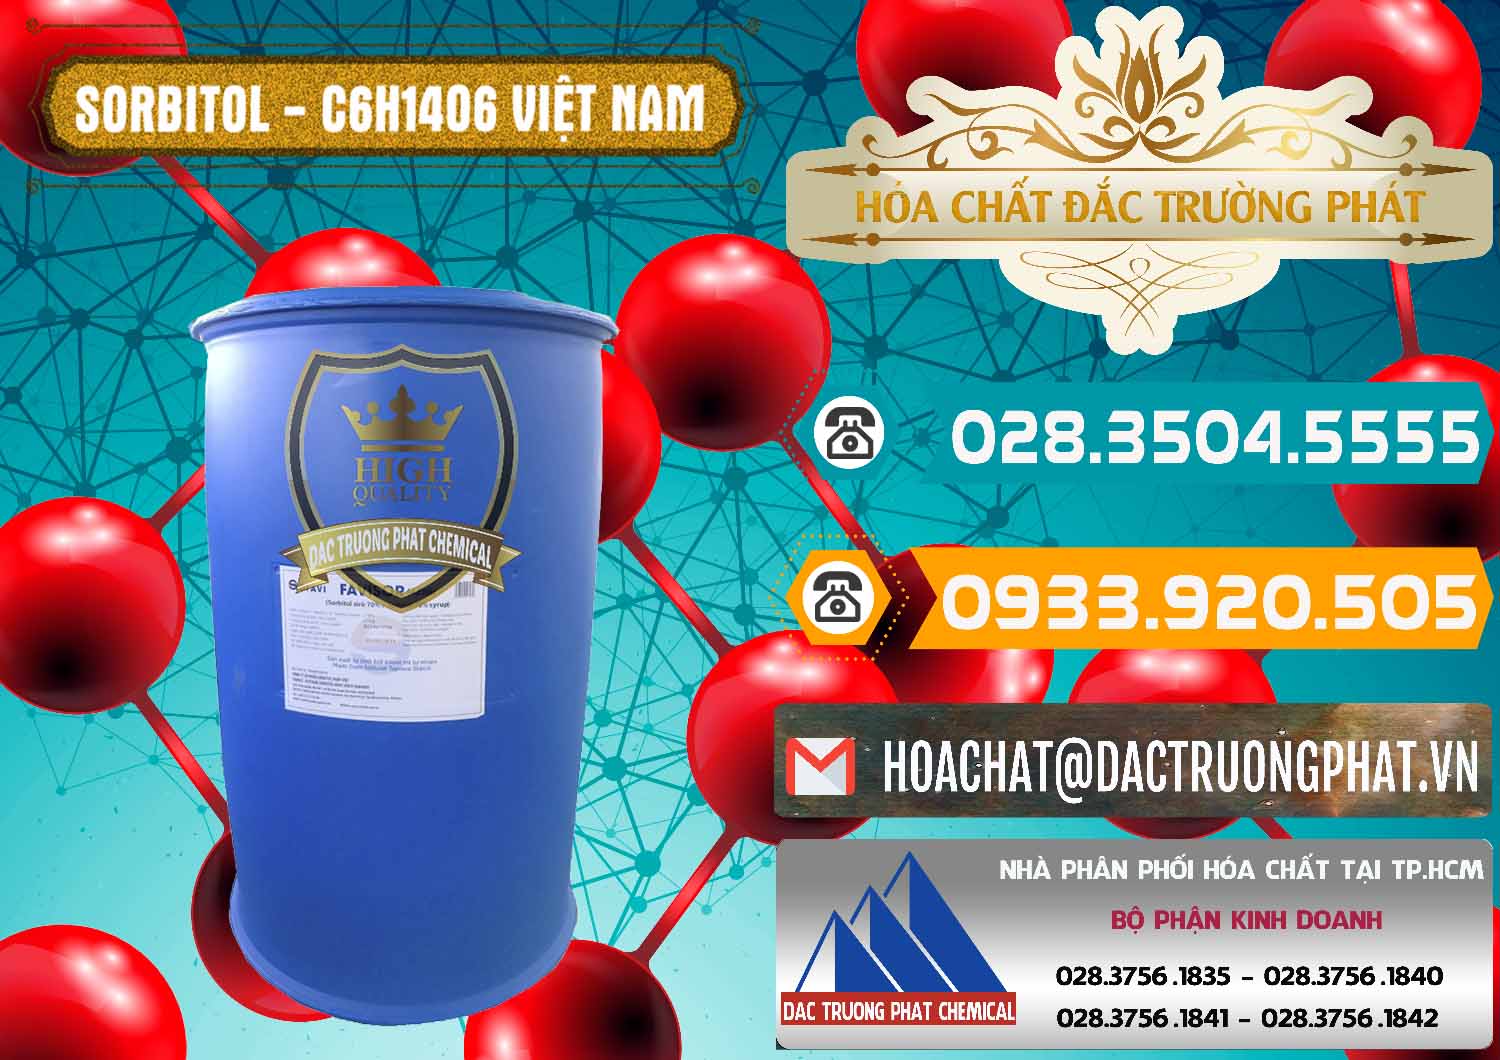 Nơi chuyên cung ứng ( phân phối ) Sorbitol - C6H14O6 Lỏng 70% Food Grade Việt Nam - 0438 - Cty phân phối _ cung ứng hóa chất tại TP.HCM - congtyhoachat.vn